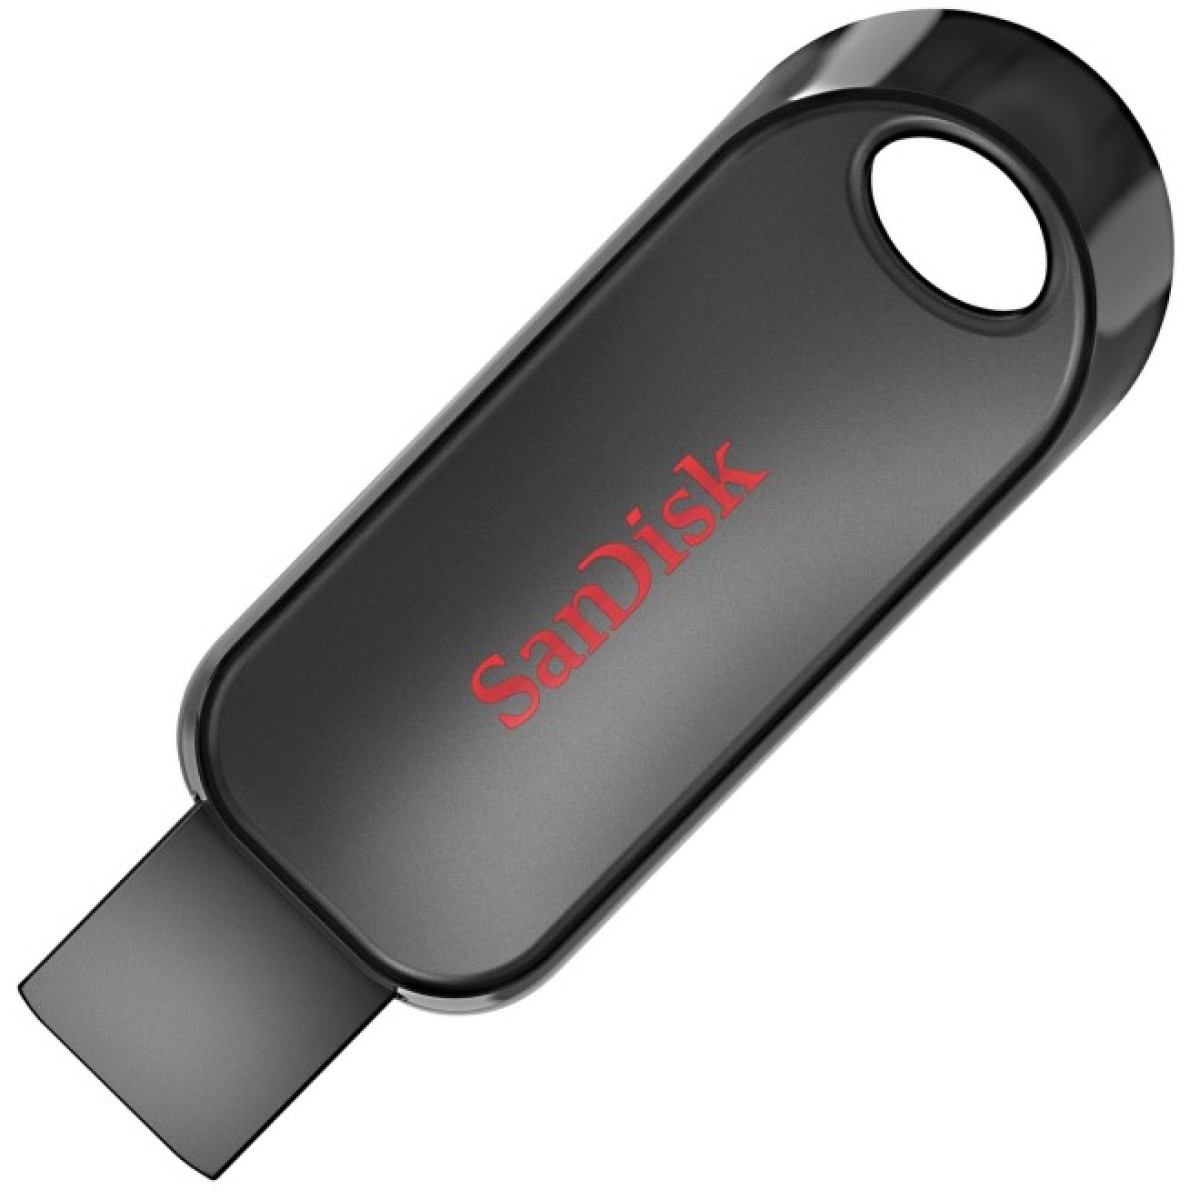 USB флеш накопитель SanDisk 128GB Snap USB 2.0 (SDCZ62-128G-G35) 256_256.jpg